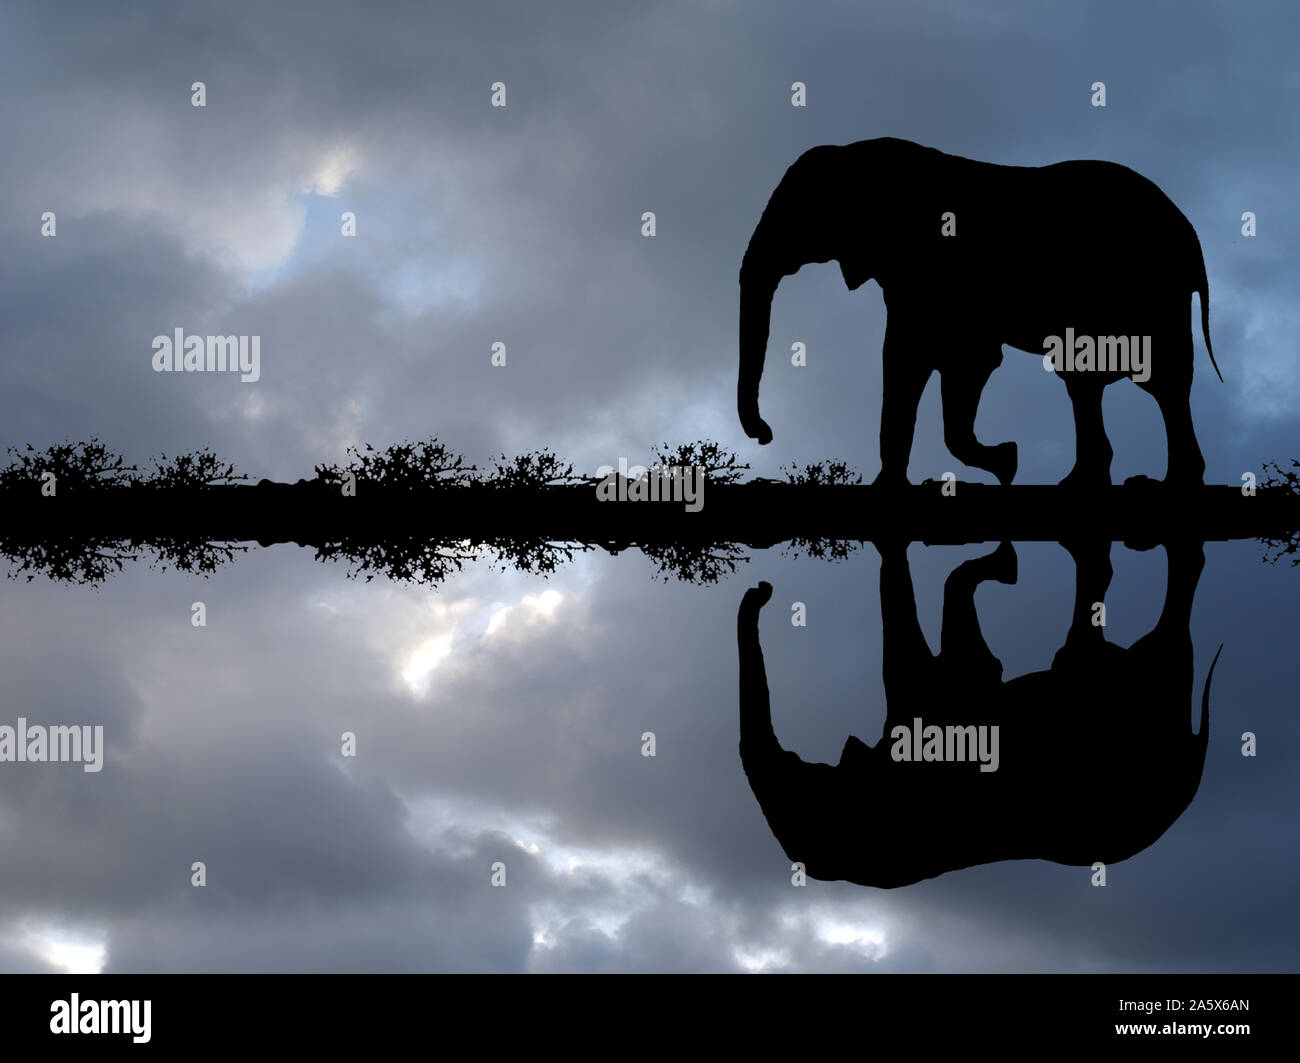 Afrikanischer Elefant spiegelt sich im Wasser bei einer Gewitterstimmung, Loxodonta africana, Stock Photo